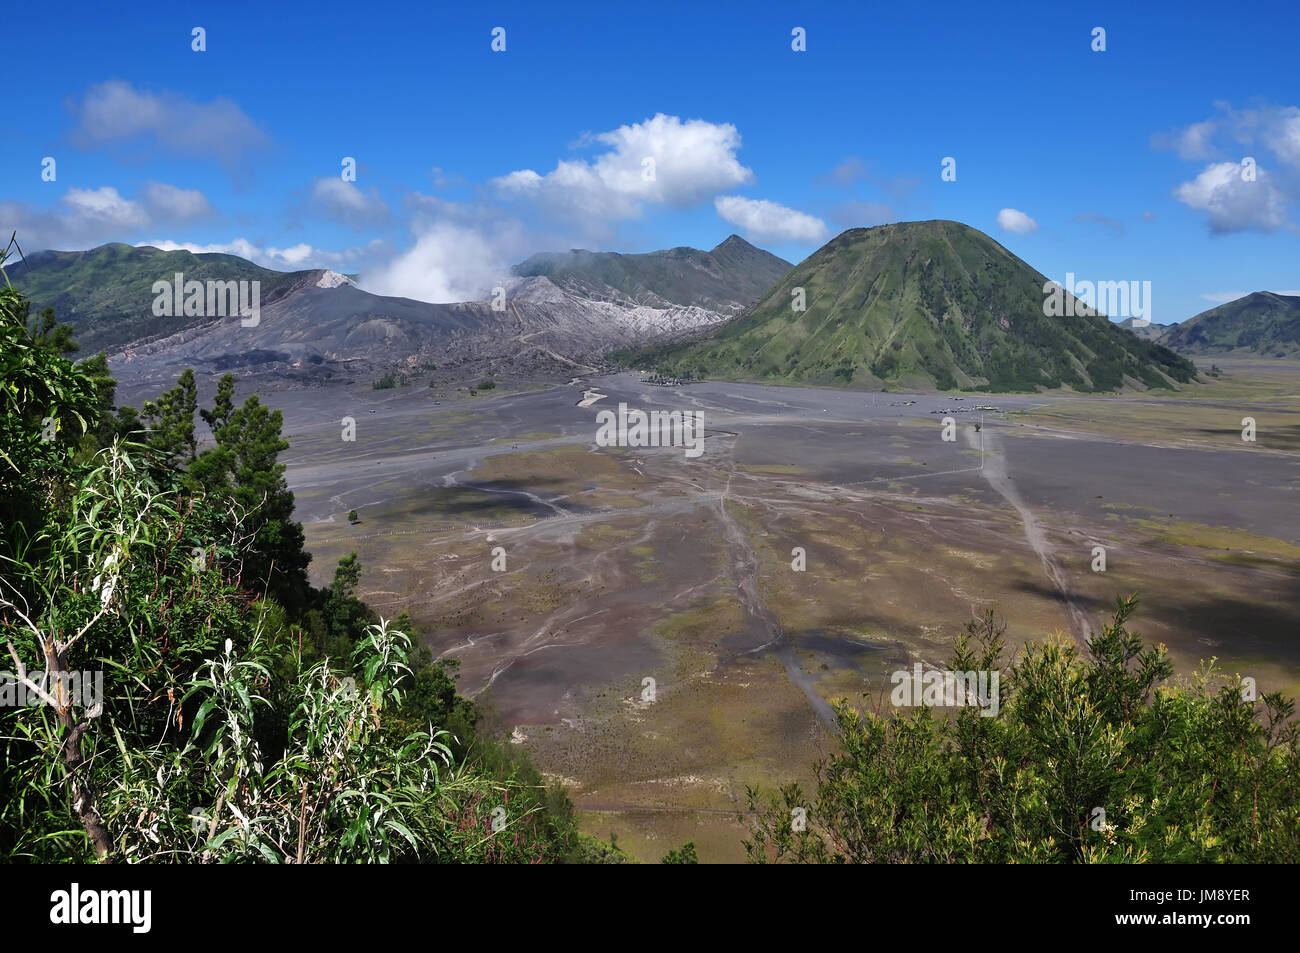 Schöne Aussicht auf Mount Bromo-Tengger-Semeru National Park in Ost-Java Indonesien. Stockfoto